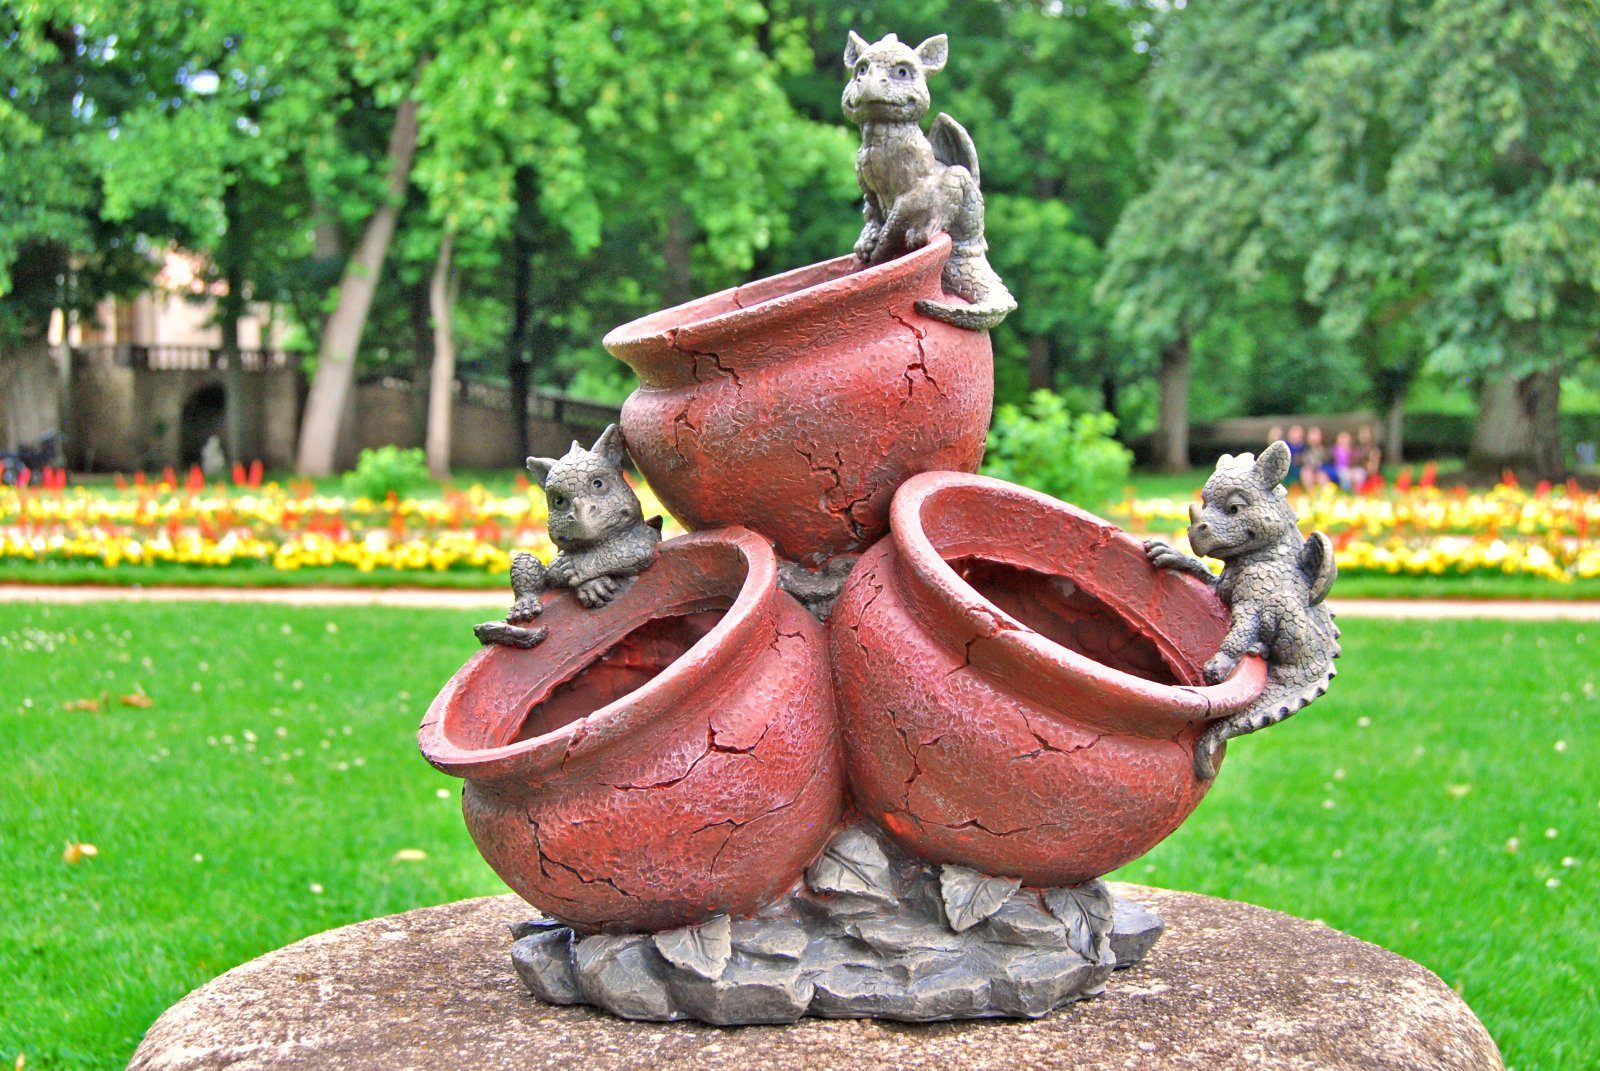 MystiCalls Gartenfigur Gartendrachen - Modell 3 Drachen auf Blumentopf - Gartenfigur